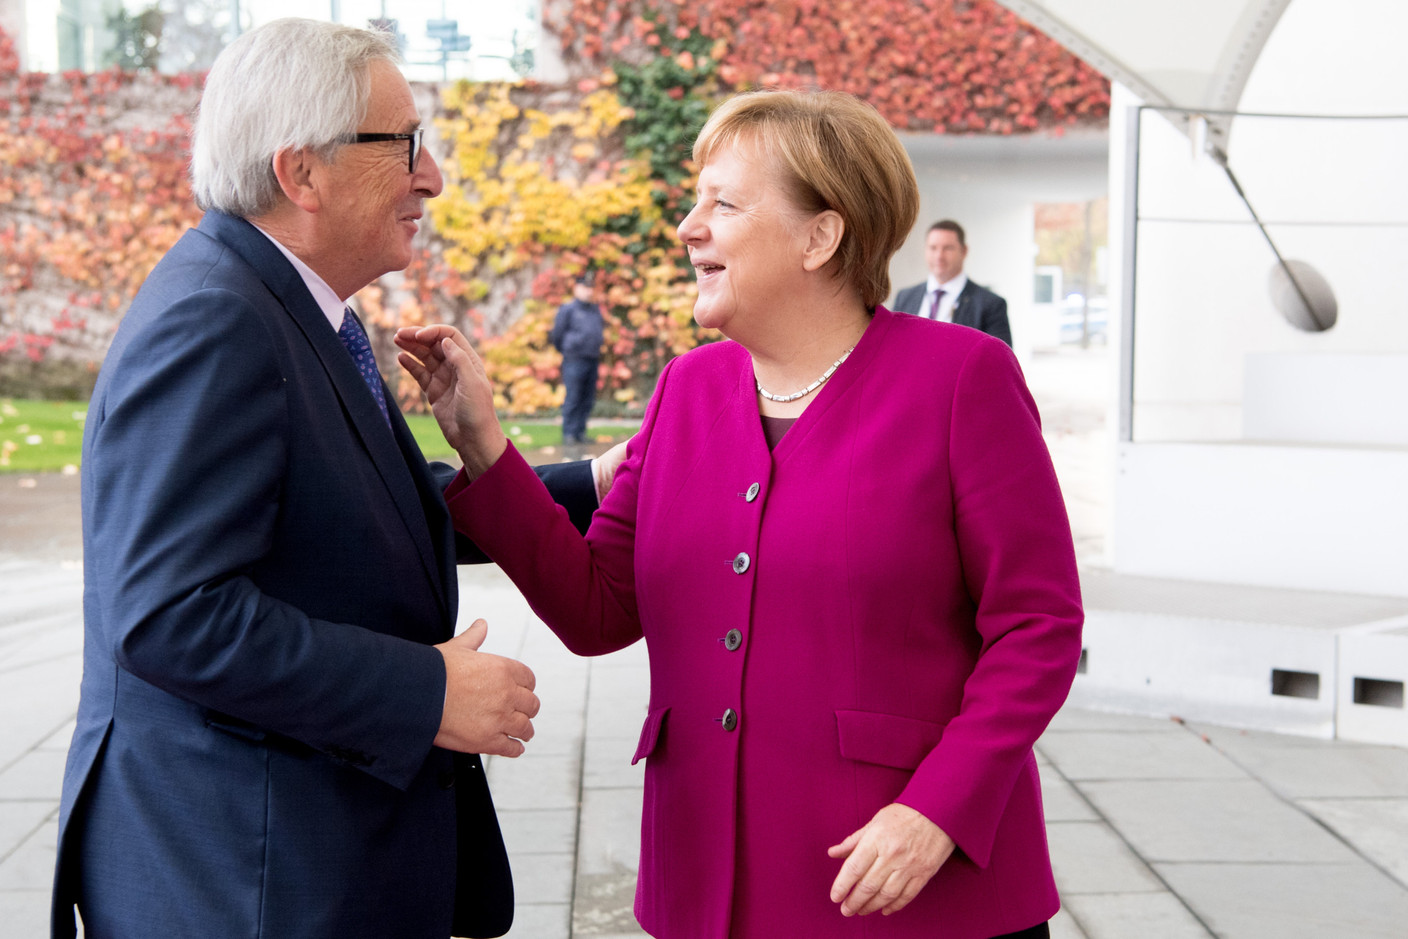 Le 12 novembre 2018, le président de la Commission européenne Jean-Claude Juncker est reçu à Berlin par Angela Merkel. (Photo: EU)